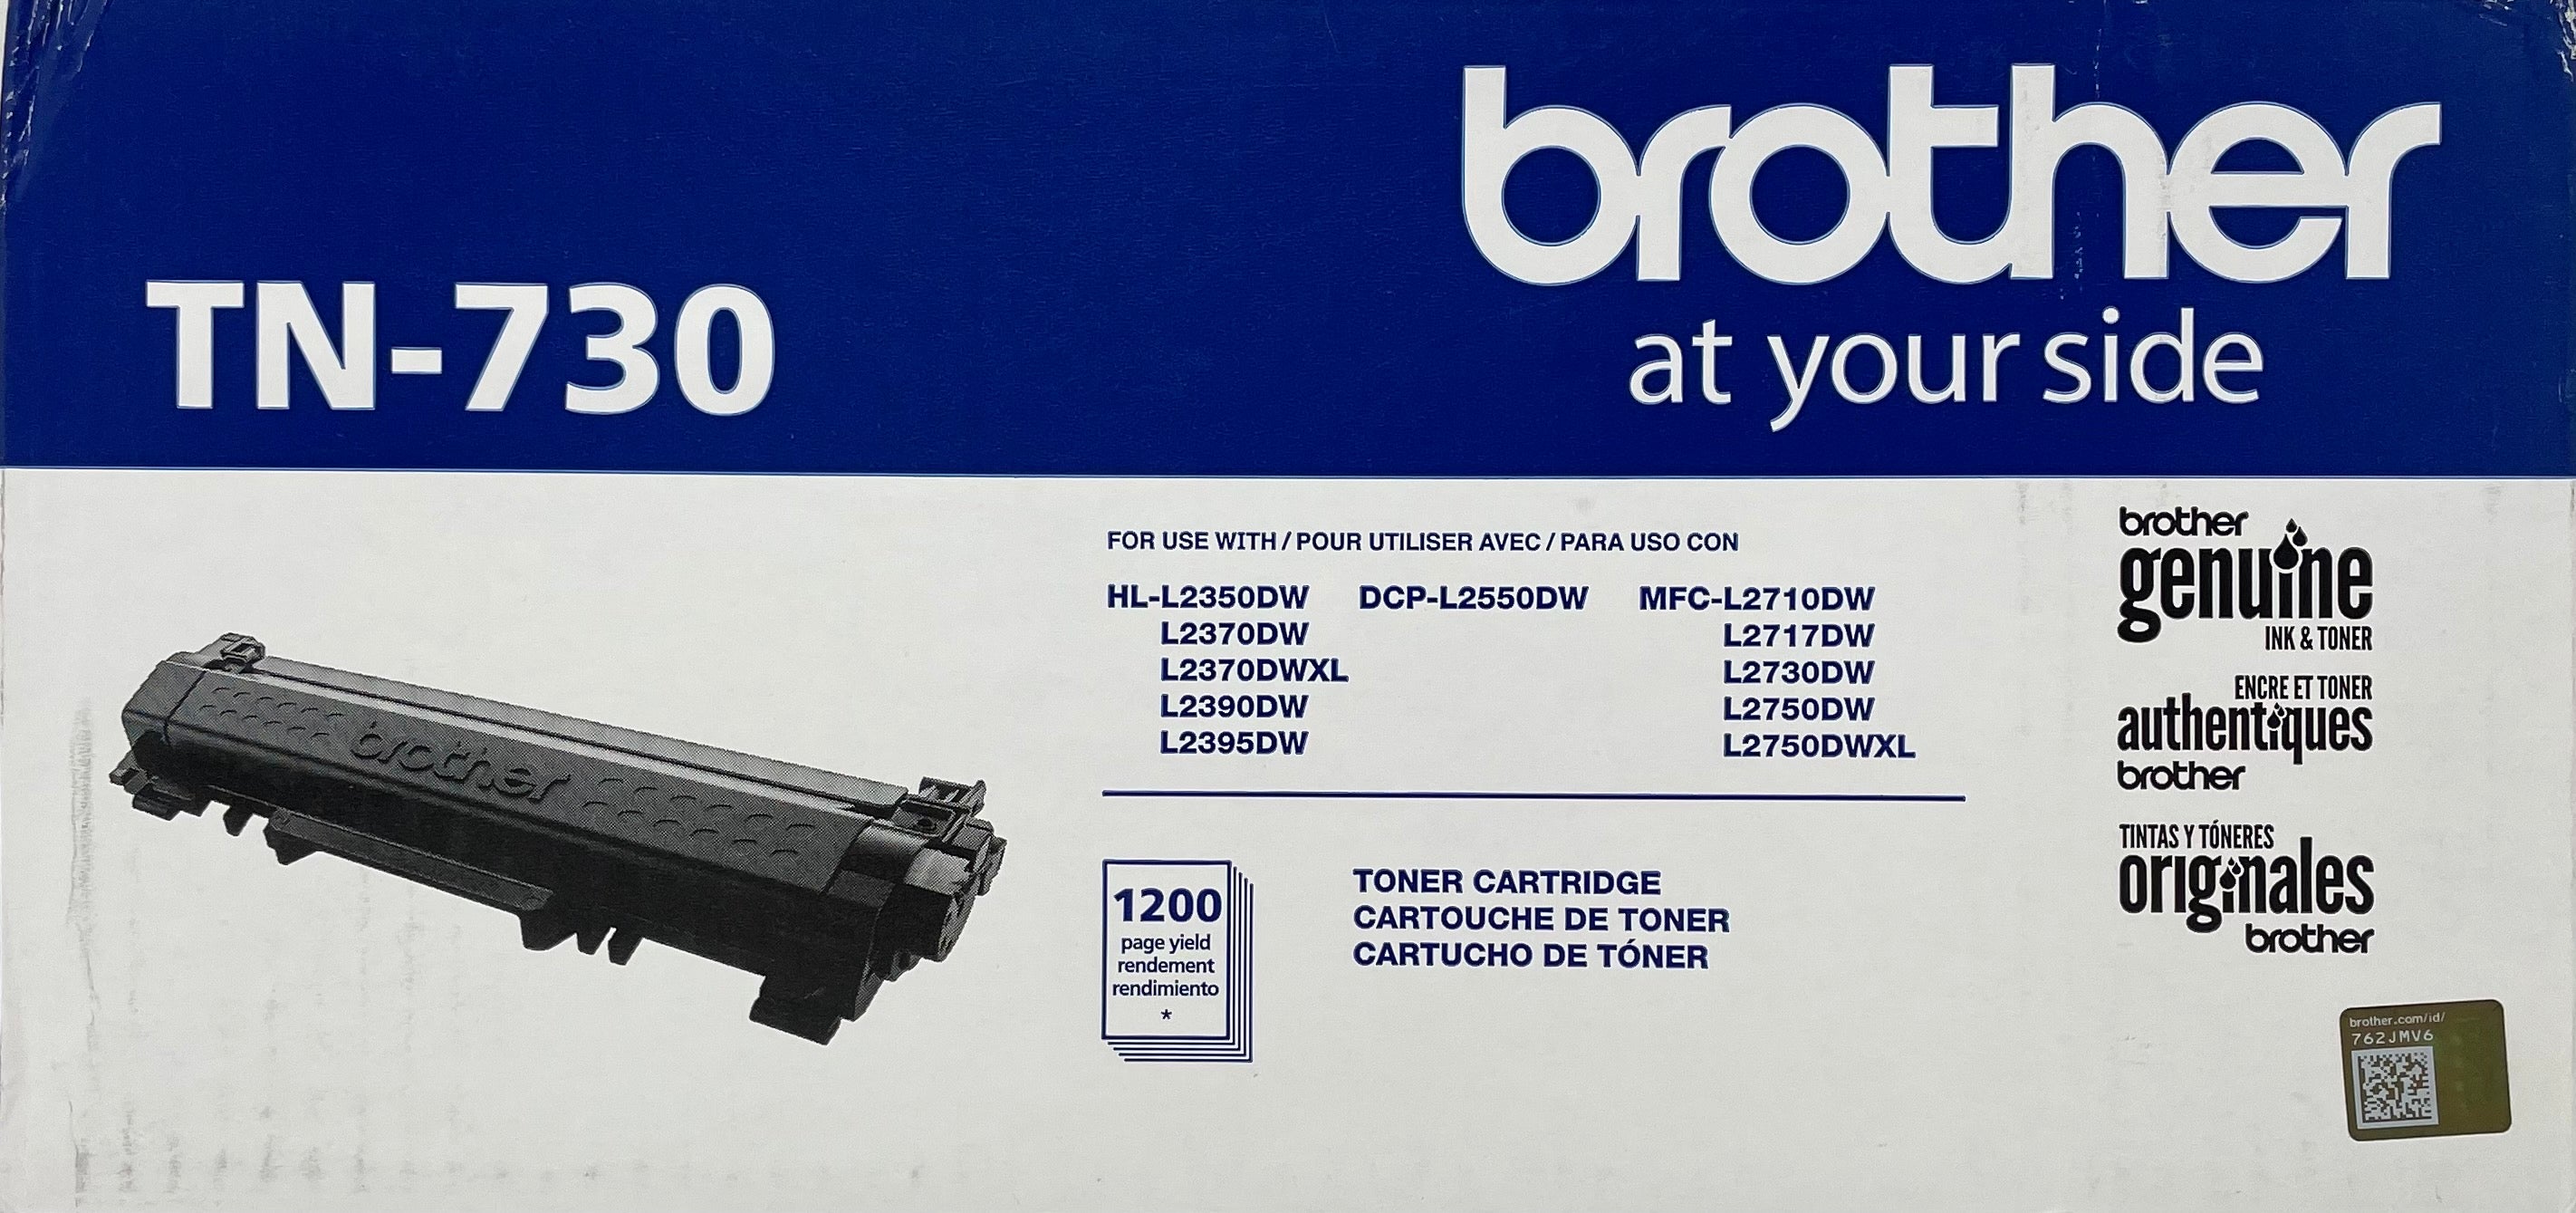 Brother MFC-L2750DW Toner Cartridges - Ink Station